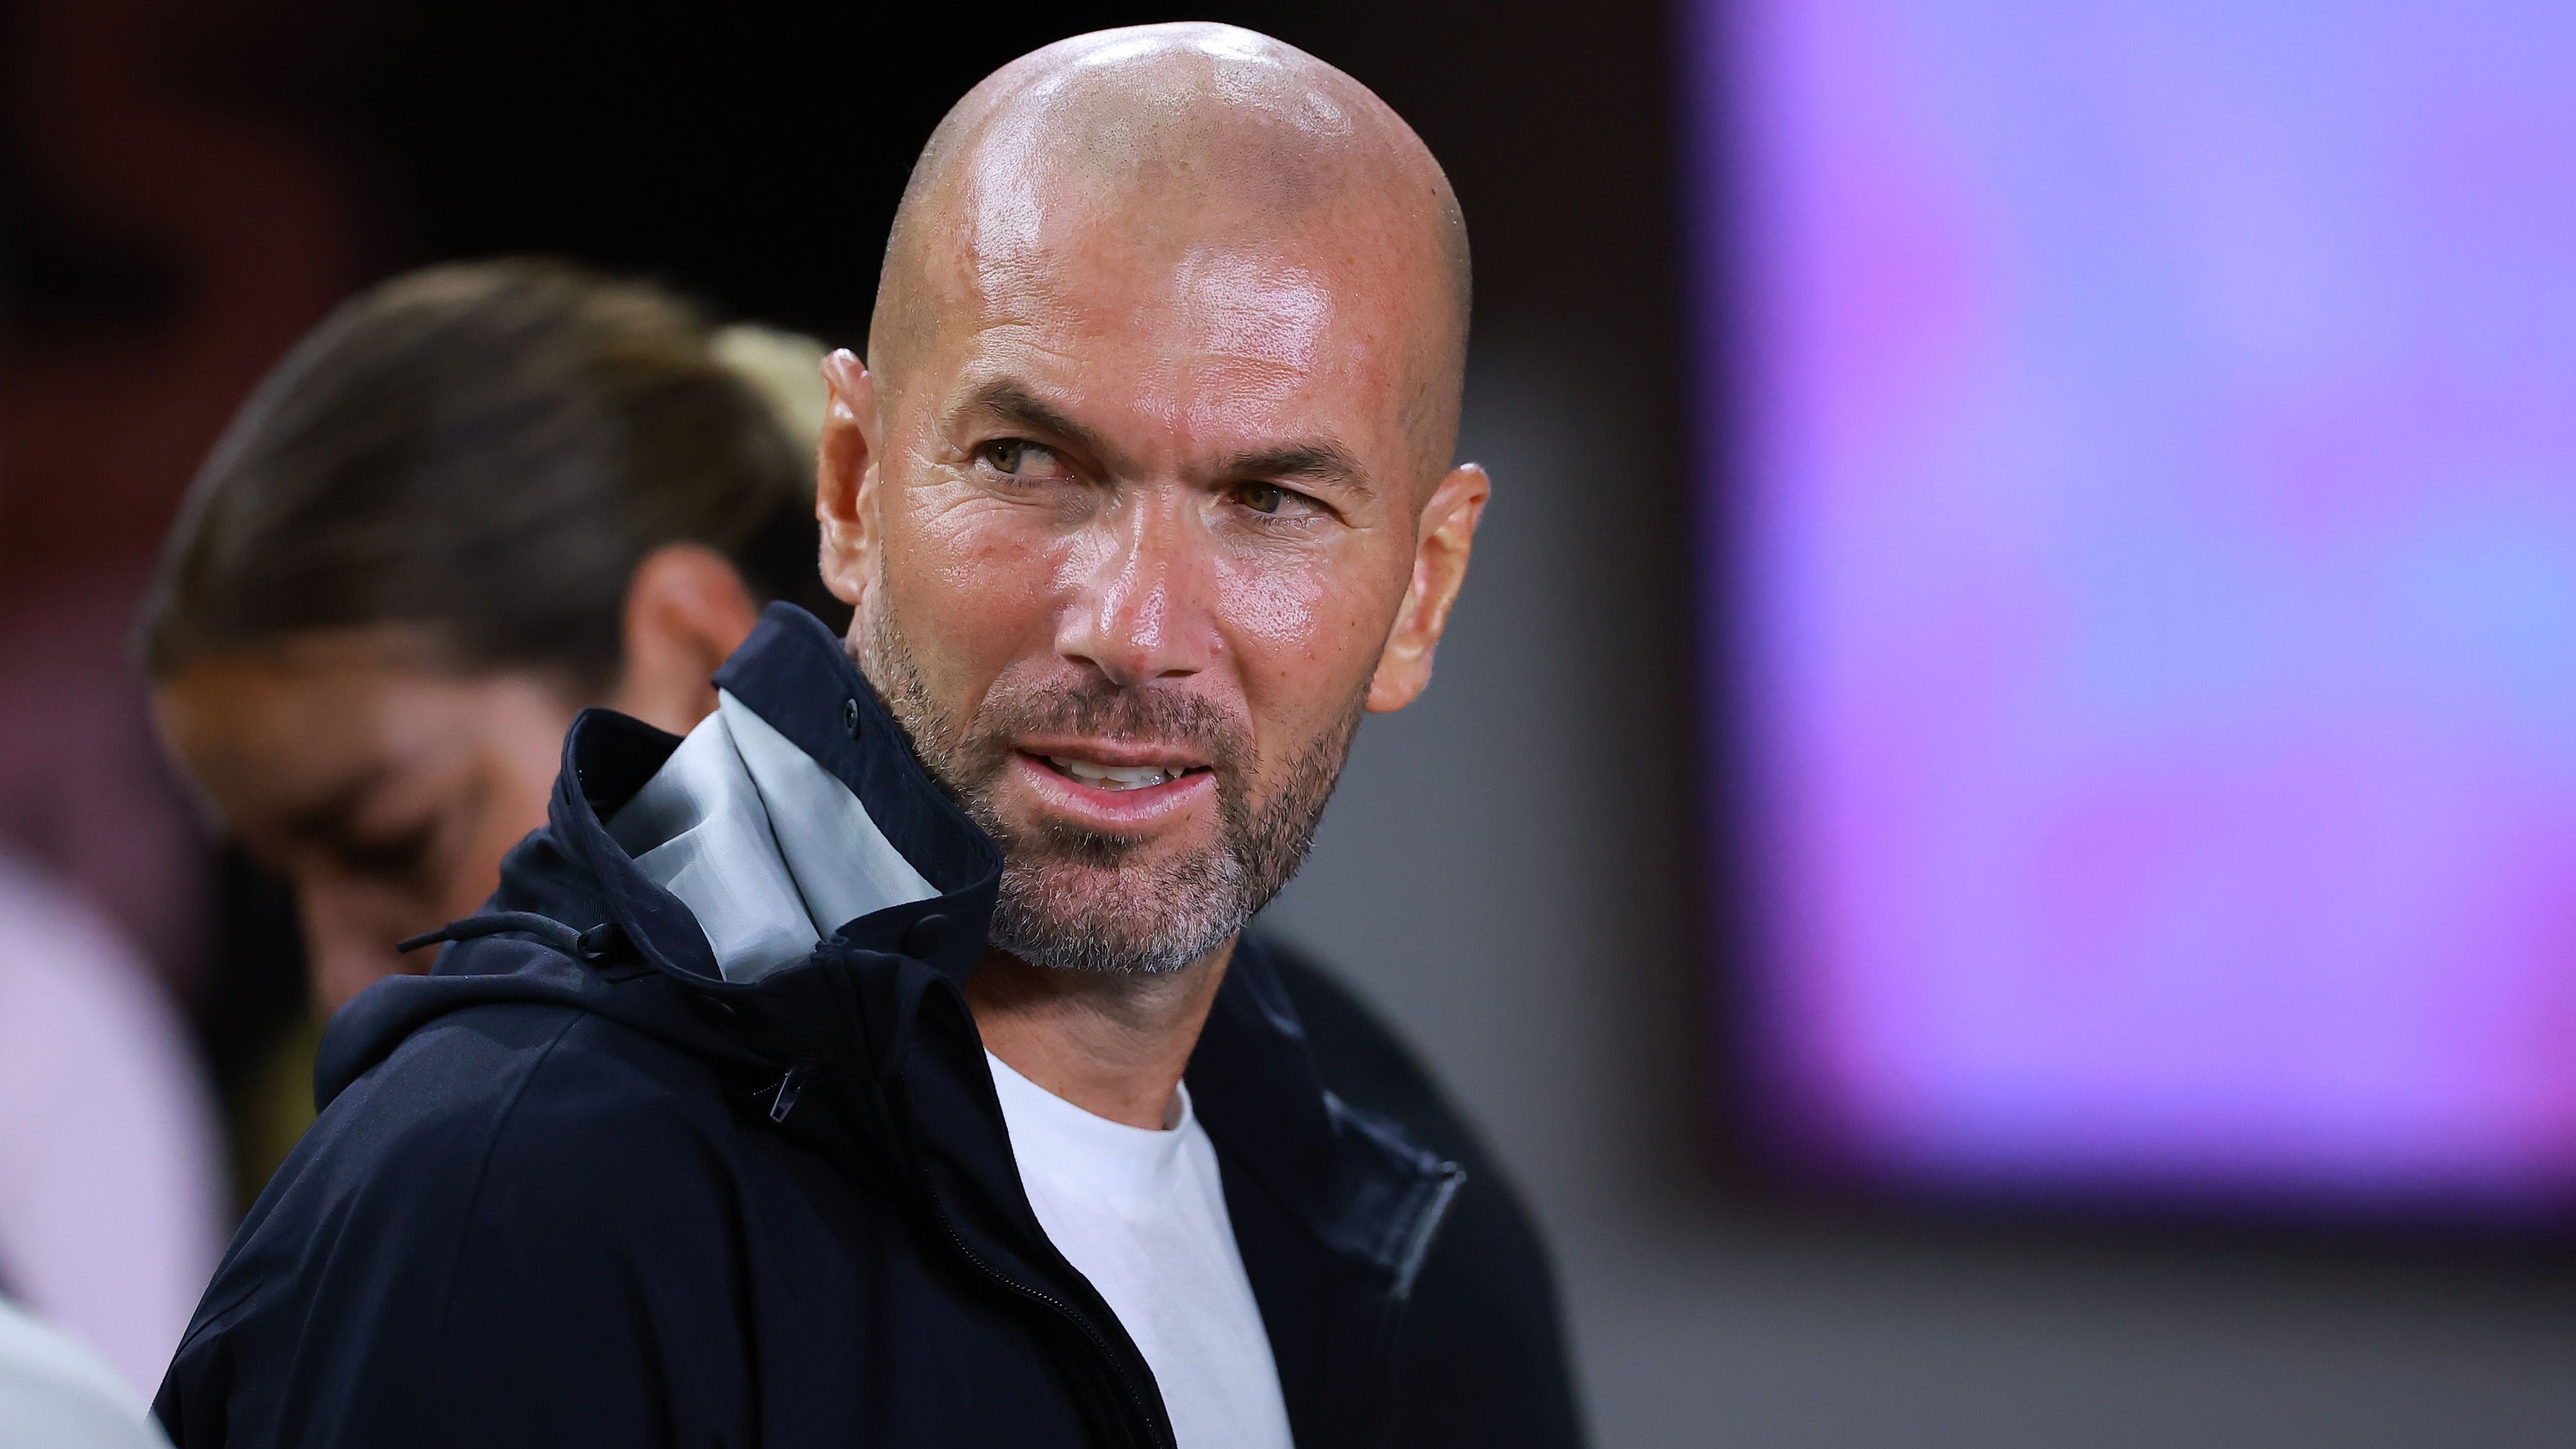 <strong>Zinedine Zidane (vereinslos)</strong><br>Am Rande des Miami-GP der Formel 1 wurde Zidane von "Sky" auf ein mögliches Engagement beim FC Bayern angesprochen. Nachdem es zunächst um das Halbfinal-Rückspiel des FC Bayern gegen seinen Ex-Klub Real Madrid ging (<a href="https://www.ran.de/sports/ticker/ma9671795/liveticker?from=%2Fsports%2Ffussball%2Fchampions-league%2Fspielplan">am Mittwoch ab 21 Uhr im Liveticker auf ran.de</a>), wurde der Weltmeister von 1998 auch nach dem frei werdenden Posten in der bayerischen Landeshauptstadt befragt ...